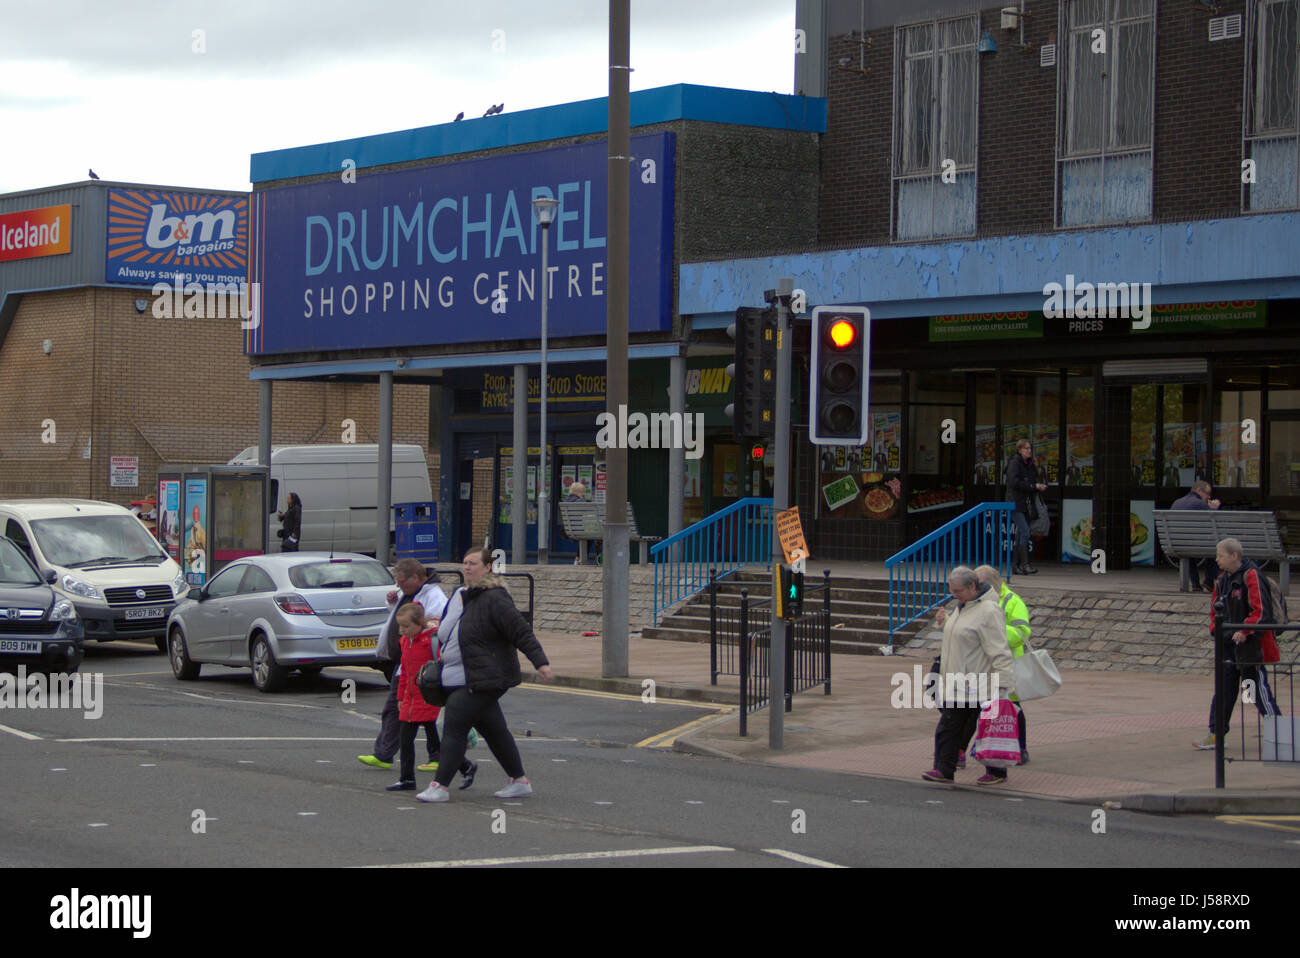 Plan de vivienda Drumchapel shopping center de privación social la pobreza Foto de stock